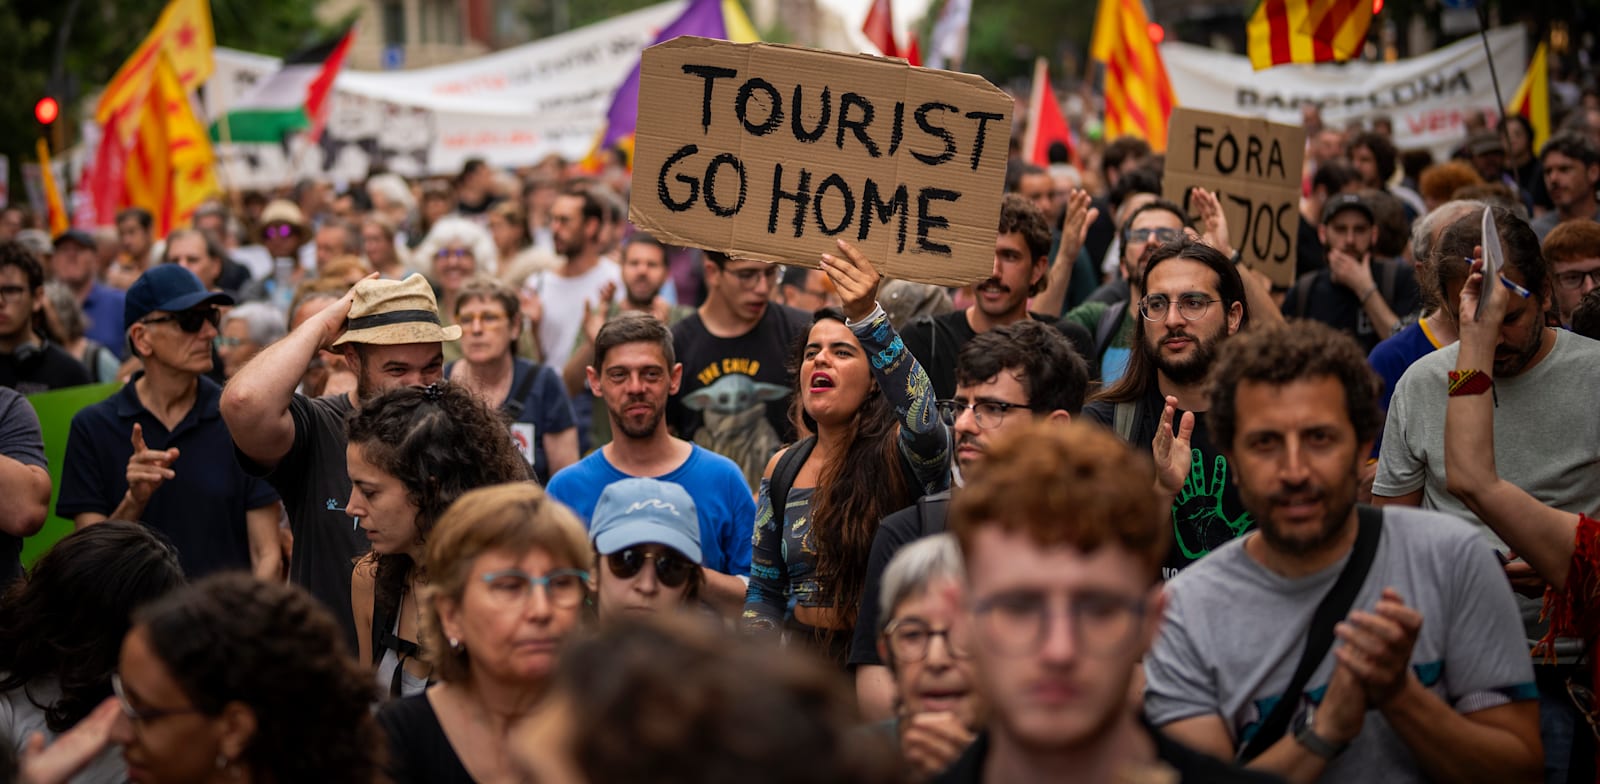 תושבי ברצלונה מפגינים נגד התיירות ההמונית (יוני) / צילום: ap, Emilio Morenatti